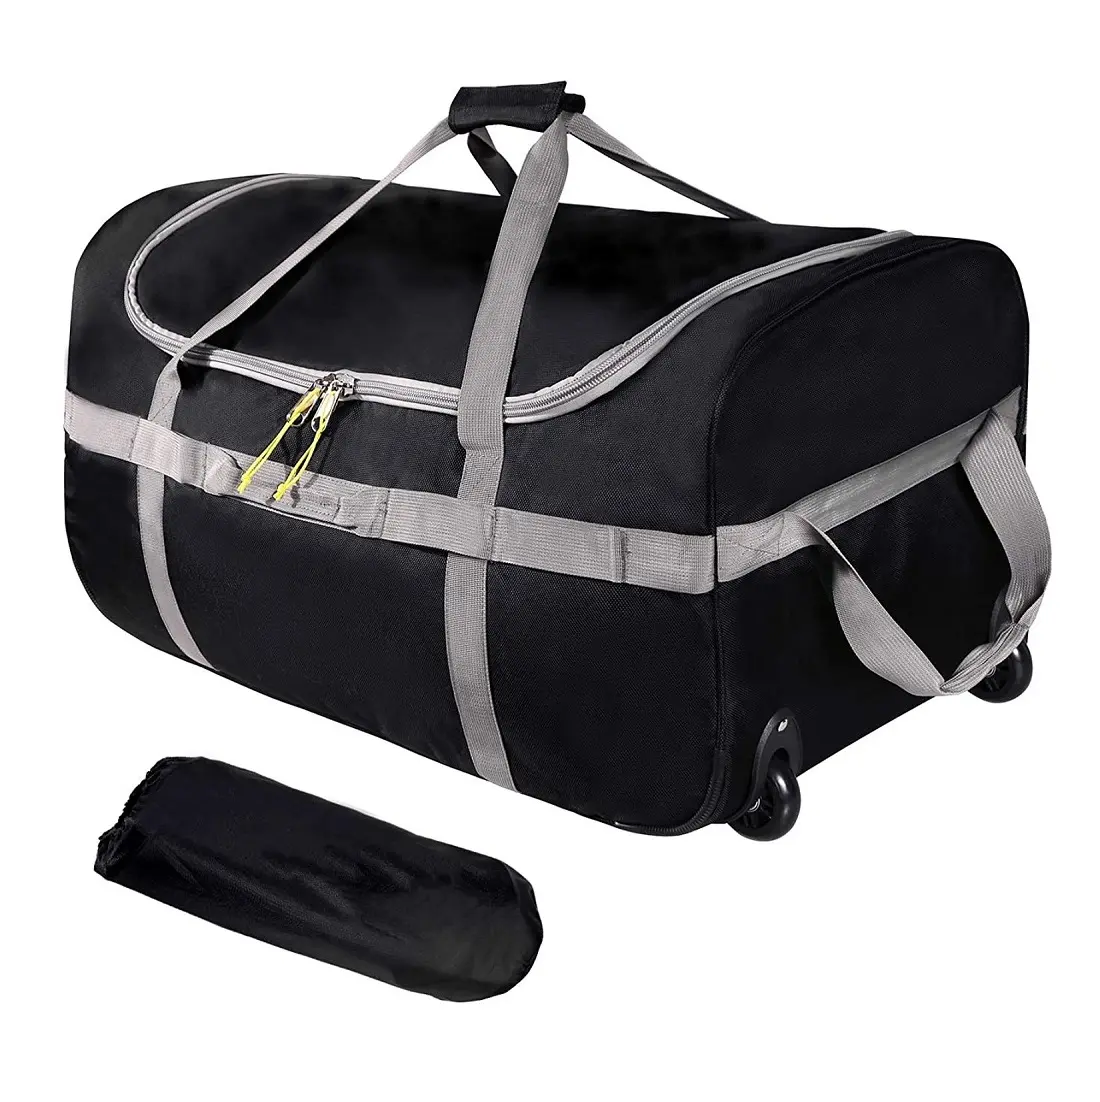 नि: शुल्क नमूने के साथ Foldable यात्रा Duffle बैग पहियों ऑक्सफोर्ड बंधनेवाला बड़े Duffel बैग के लिए रोलर्स के साथ डेरा डाले हुए यात्रा गियर